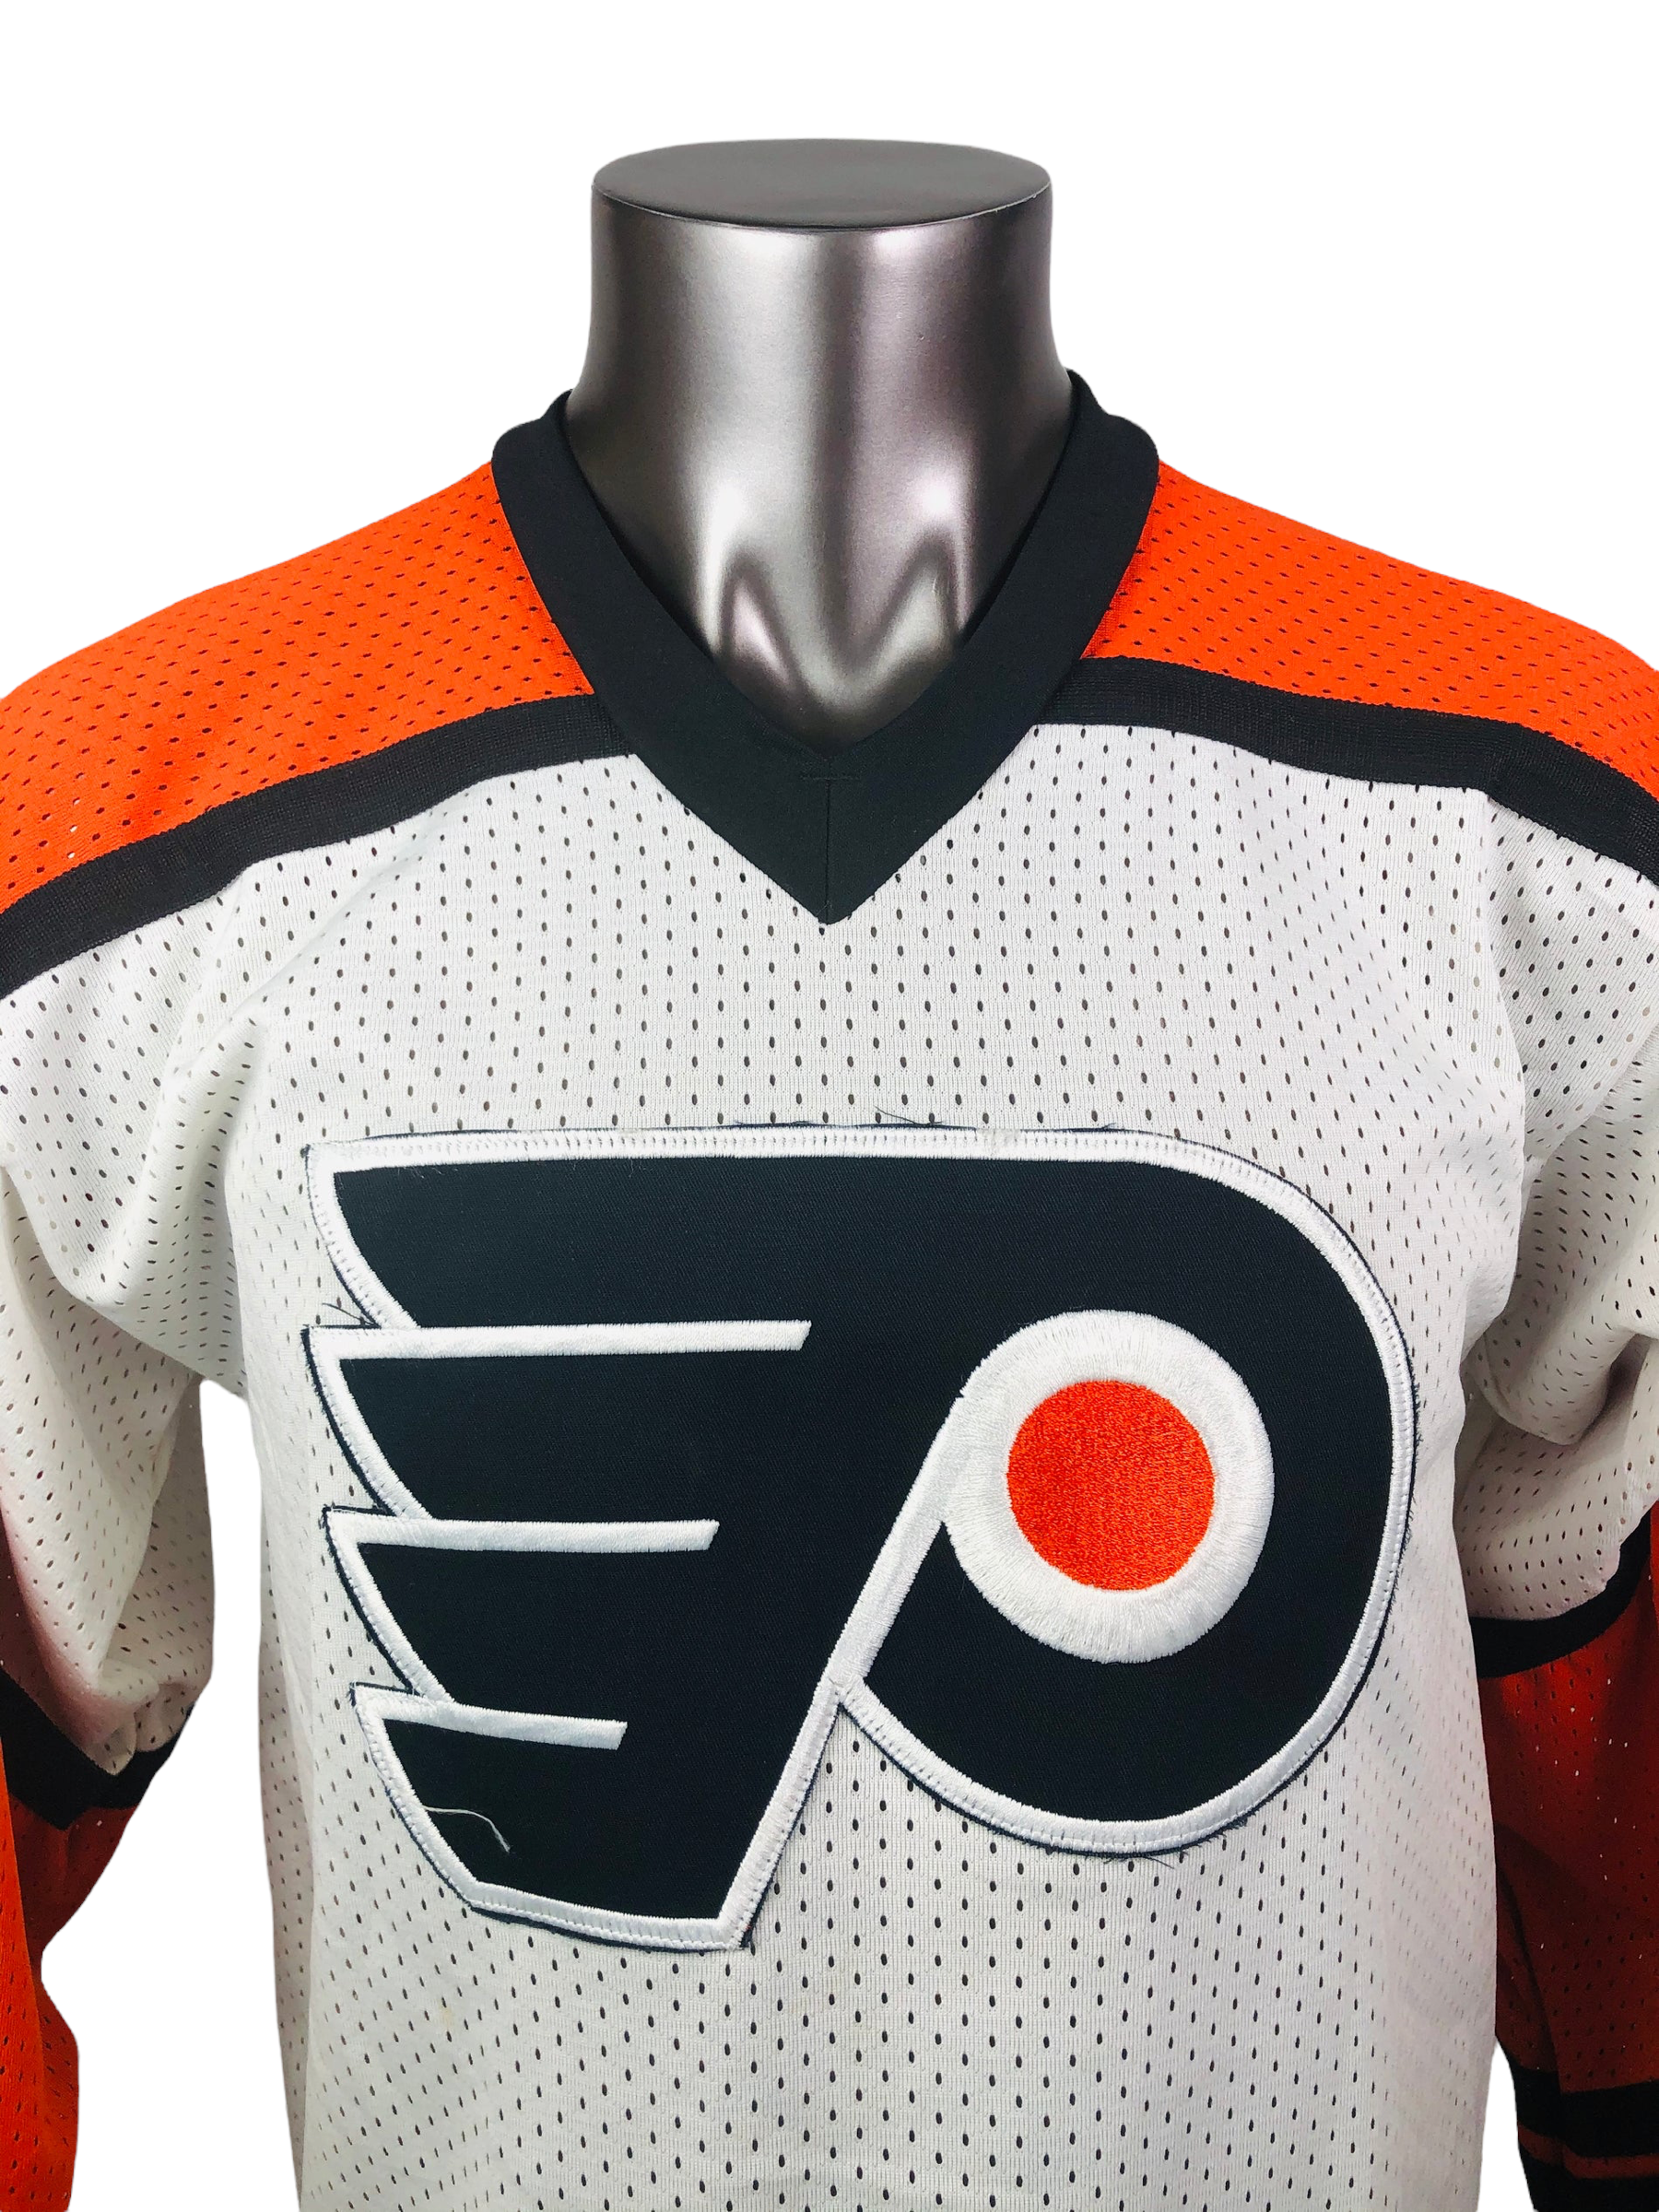 Philadelphia Flyers Gear